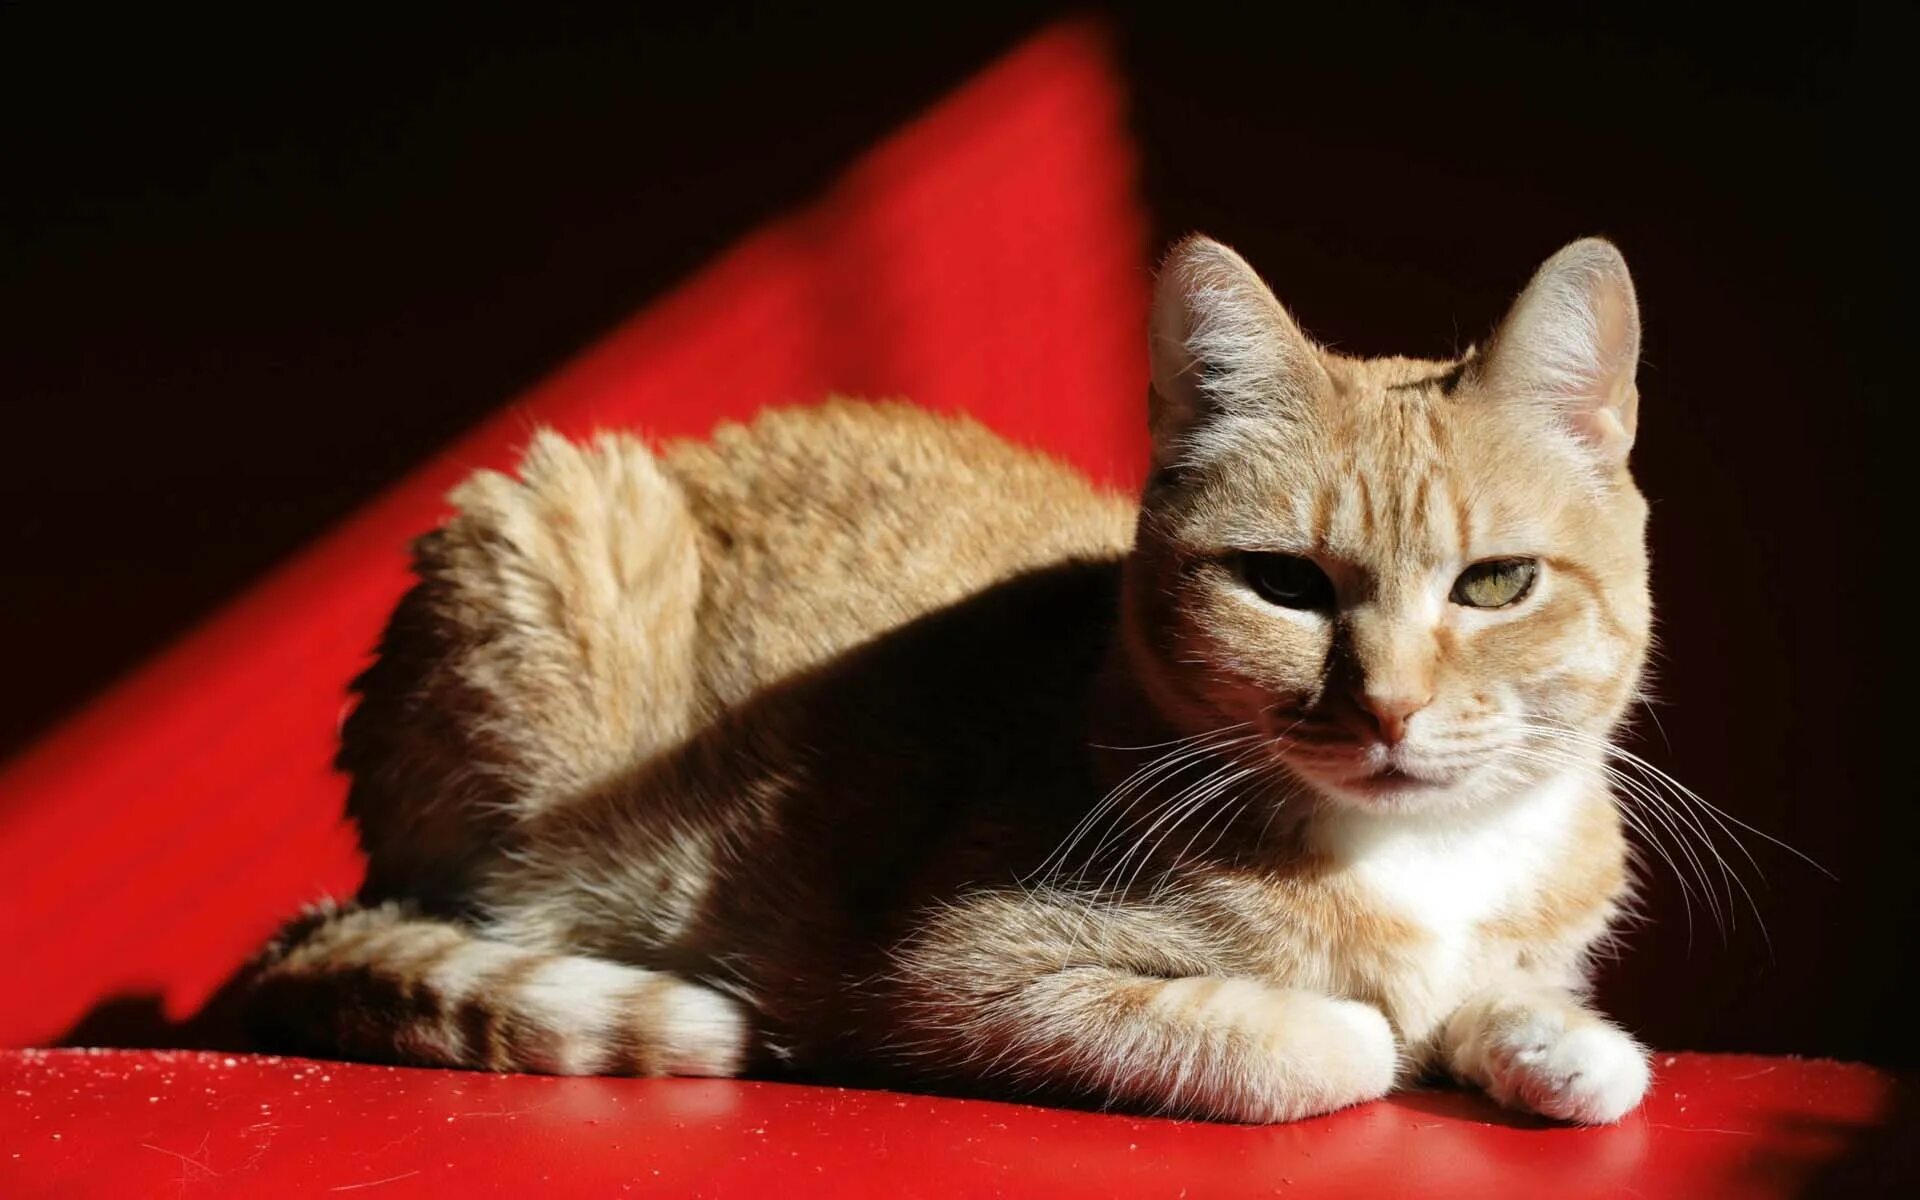 Cats me red. Европейский короткошерстный кот рыжий. Европейская кошка короткошерстная красный тэбби. Европейская короткошерстная кошка рыжая. Кошка на Красном фоне.